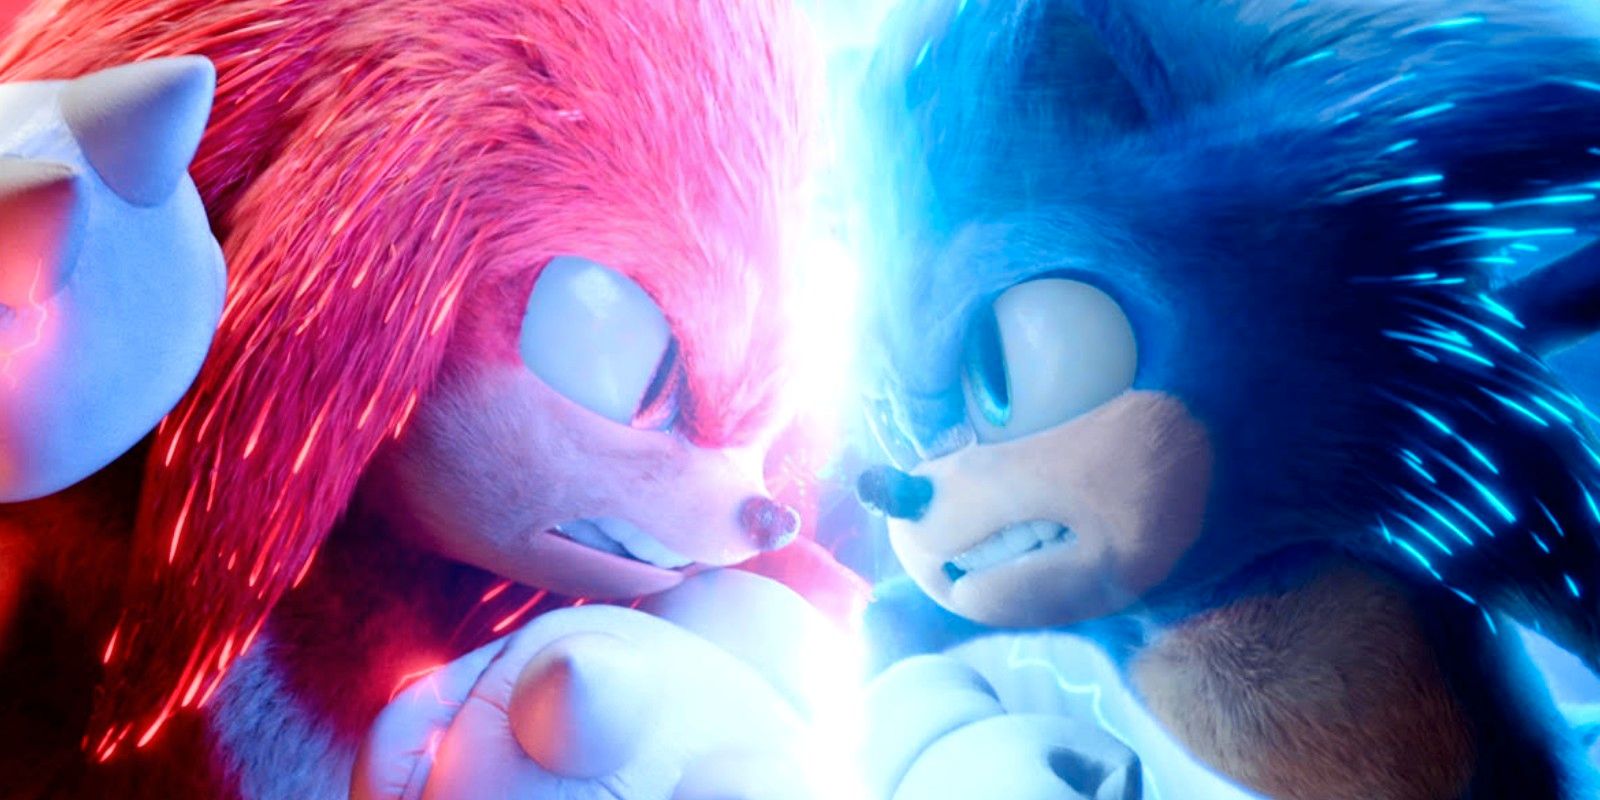 Knuckles e Sonic em Sonic 2: O Filme (Reprodução)